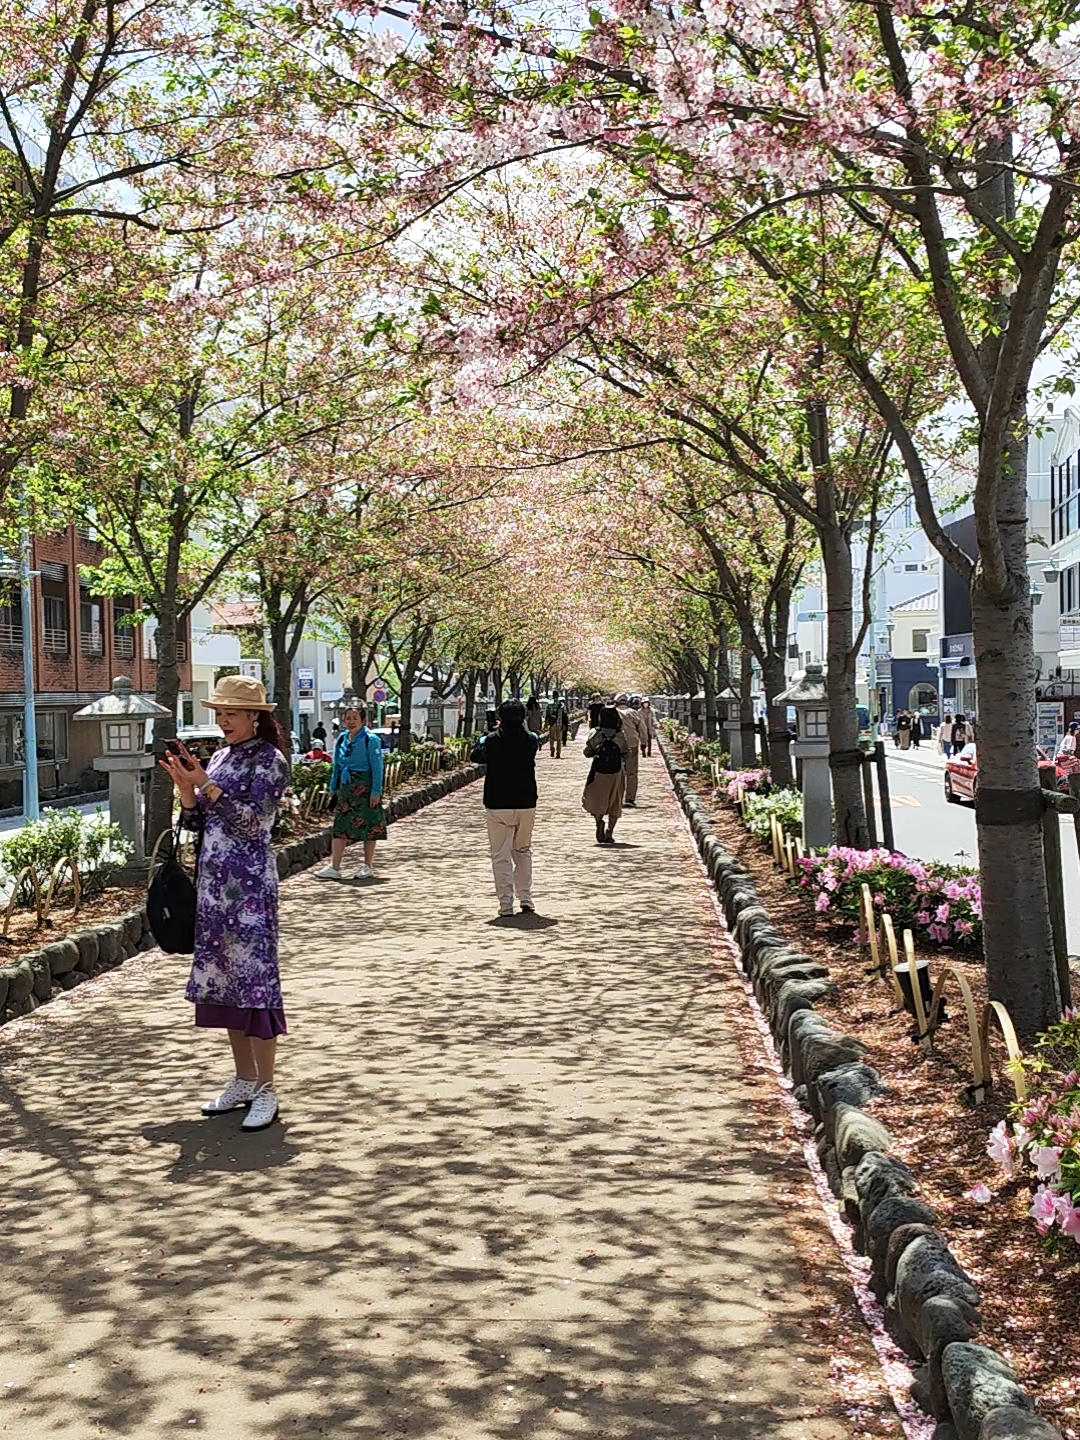 这是一条长达百米的樱花大道。在樱花怒放的时候，穿上和服，打着纸花伞，徐徐行走在樱花树下，美的就像一幅